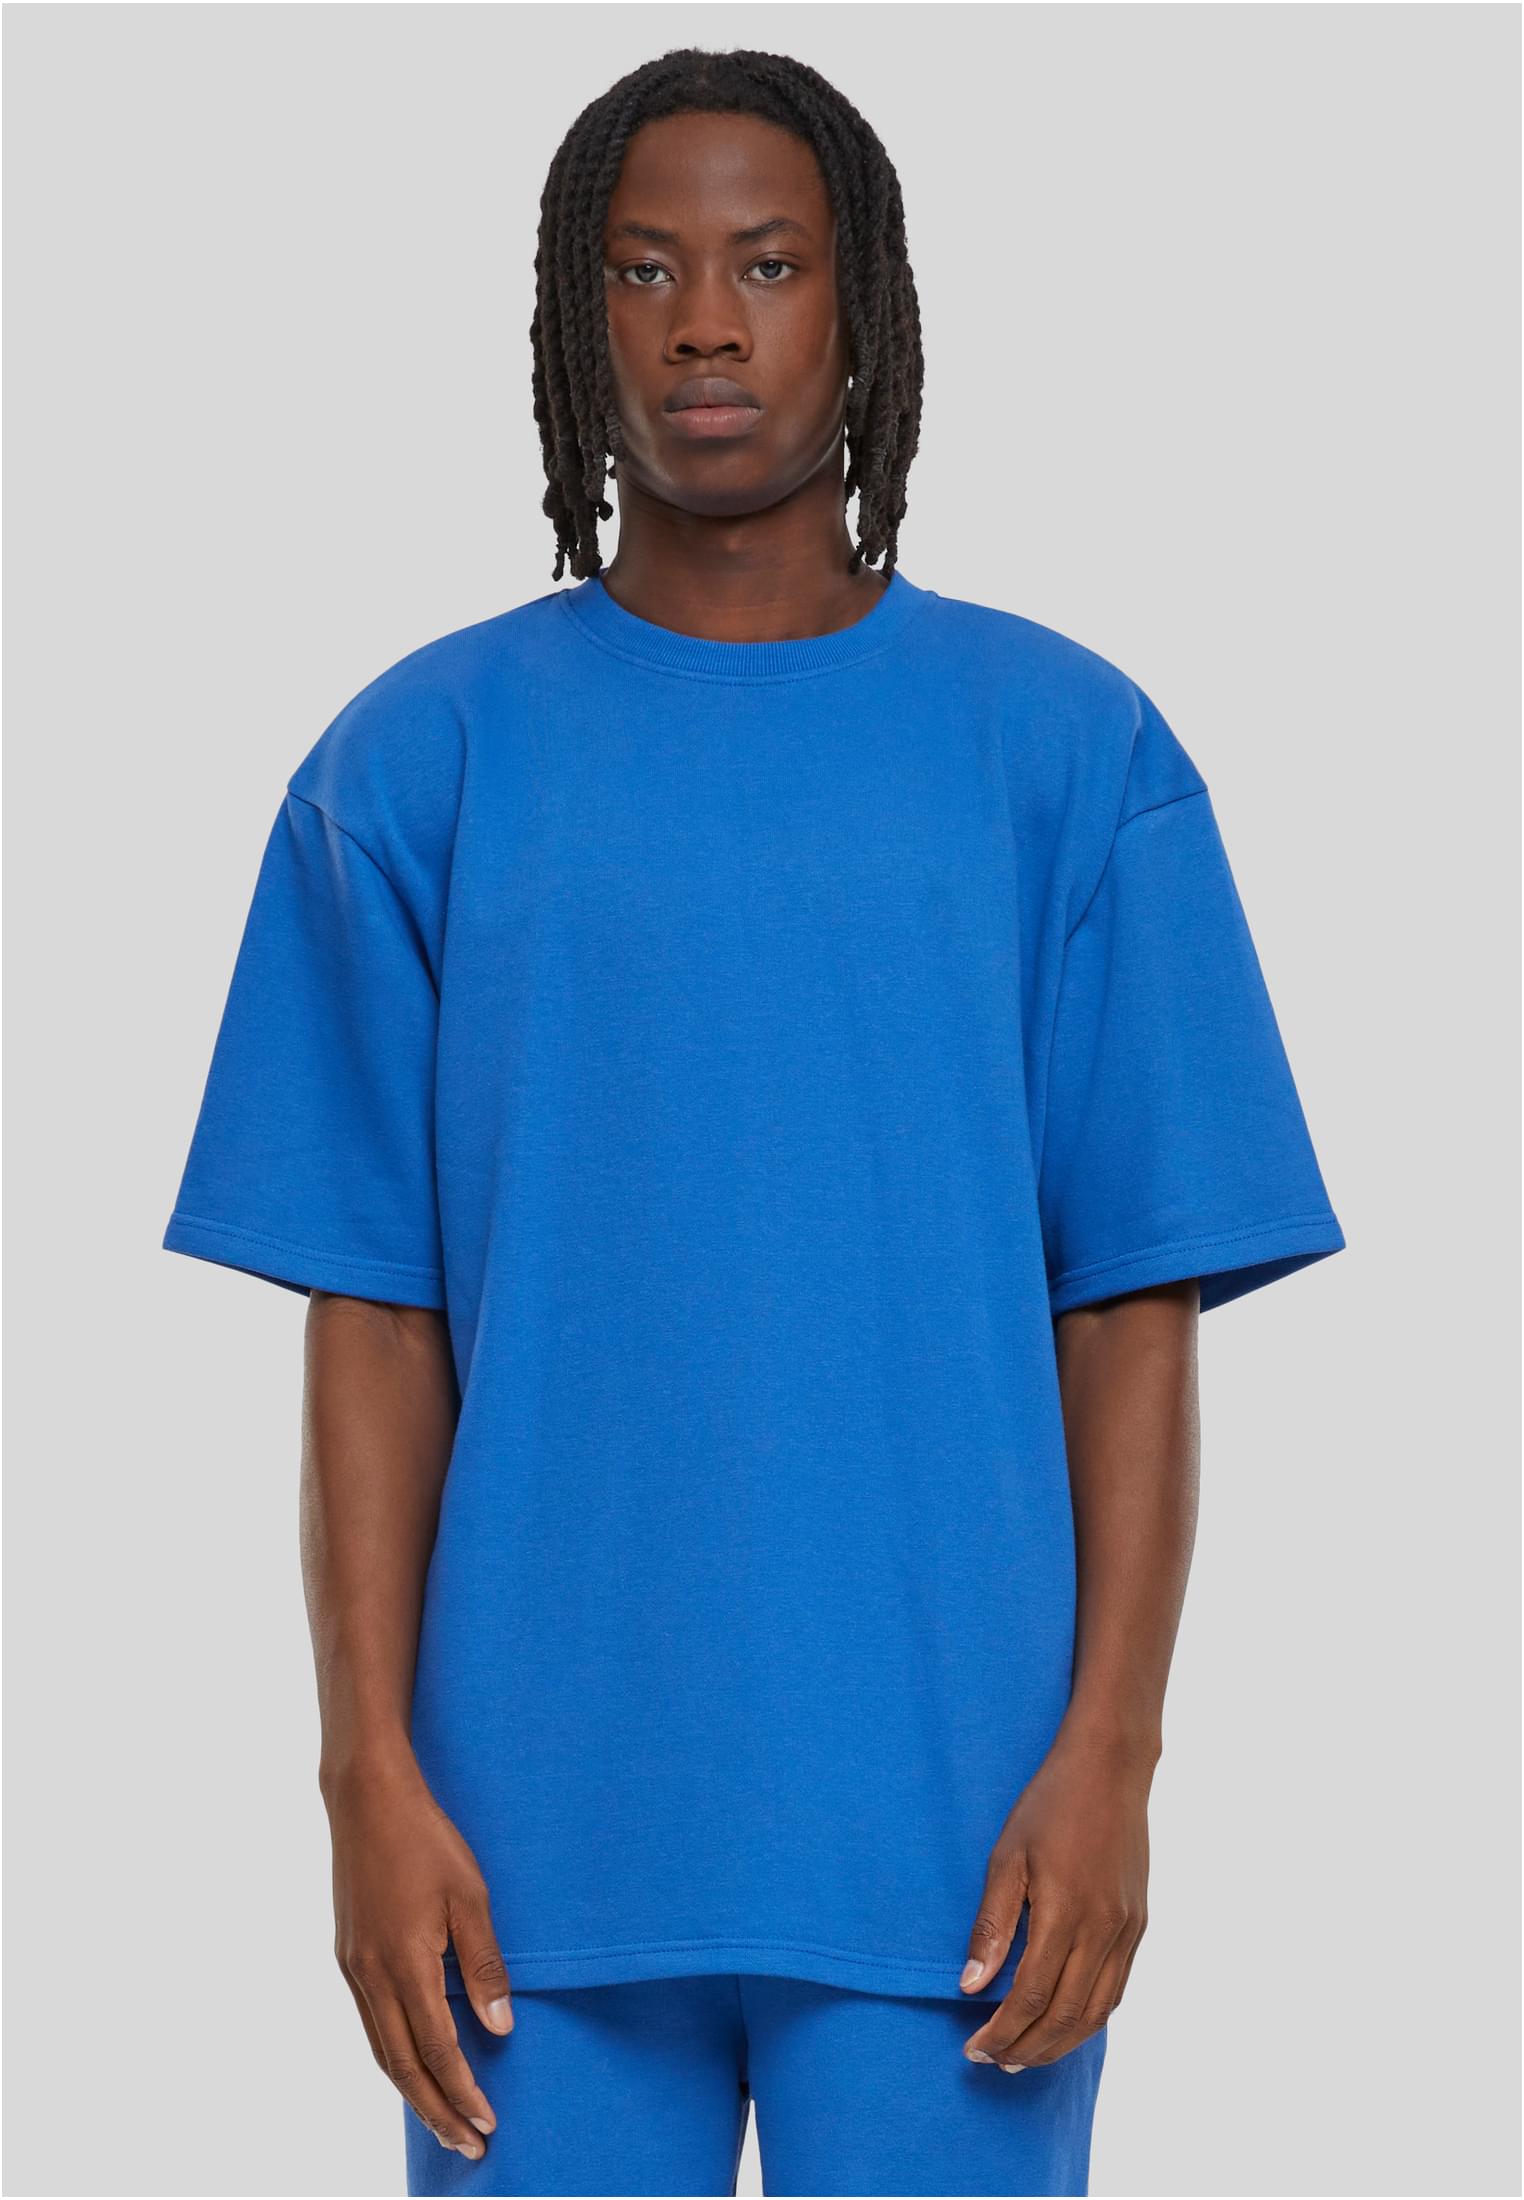 Men's Light Terry T-Shirt Crew - Blue